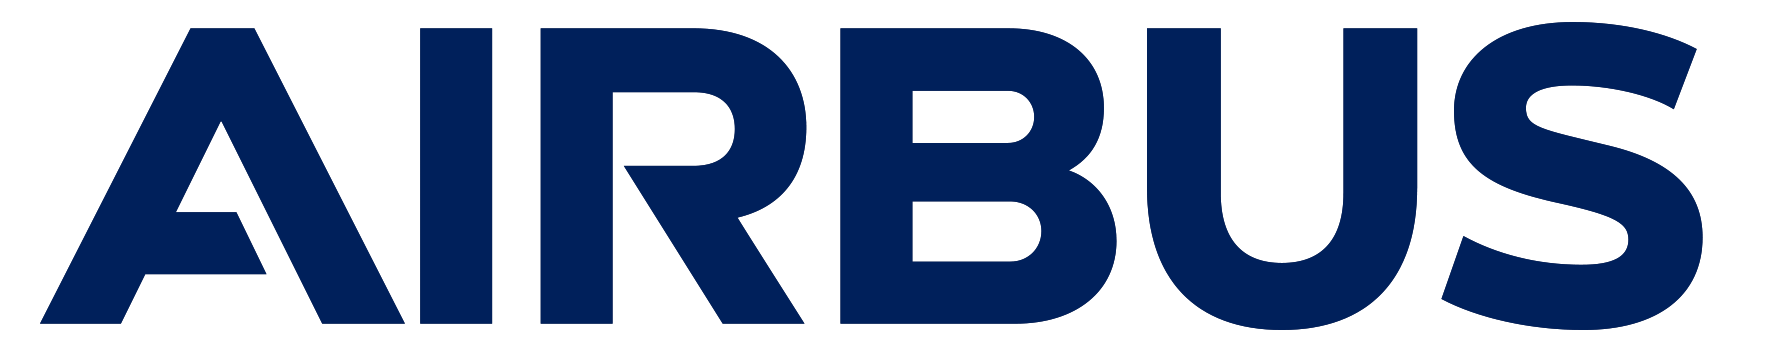 Airbus_logo_2017.png